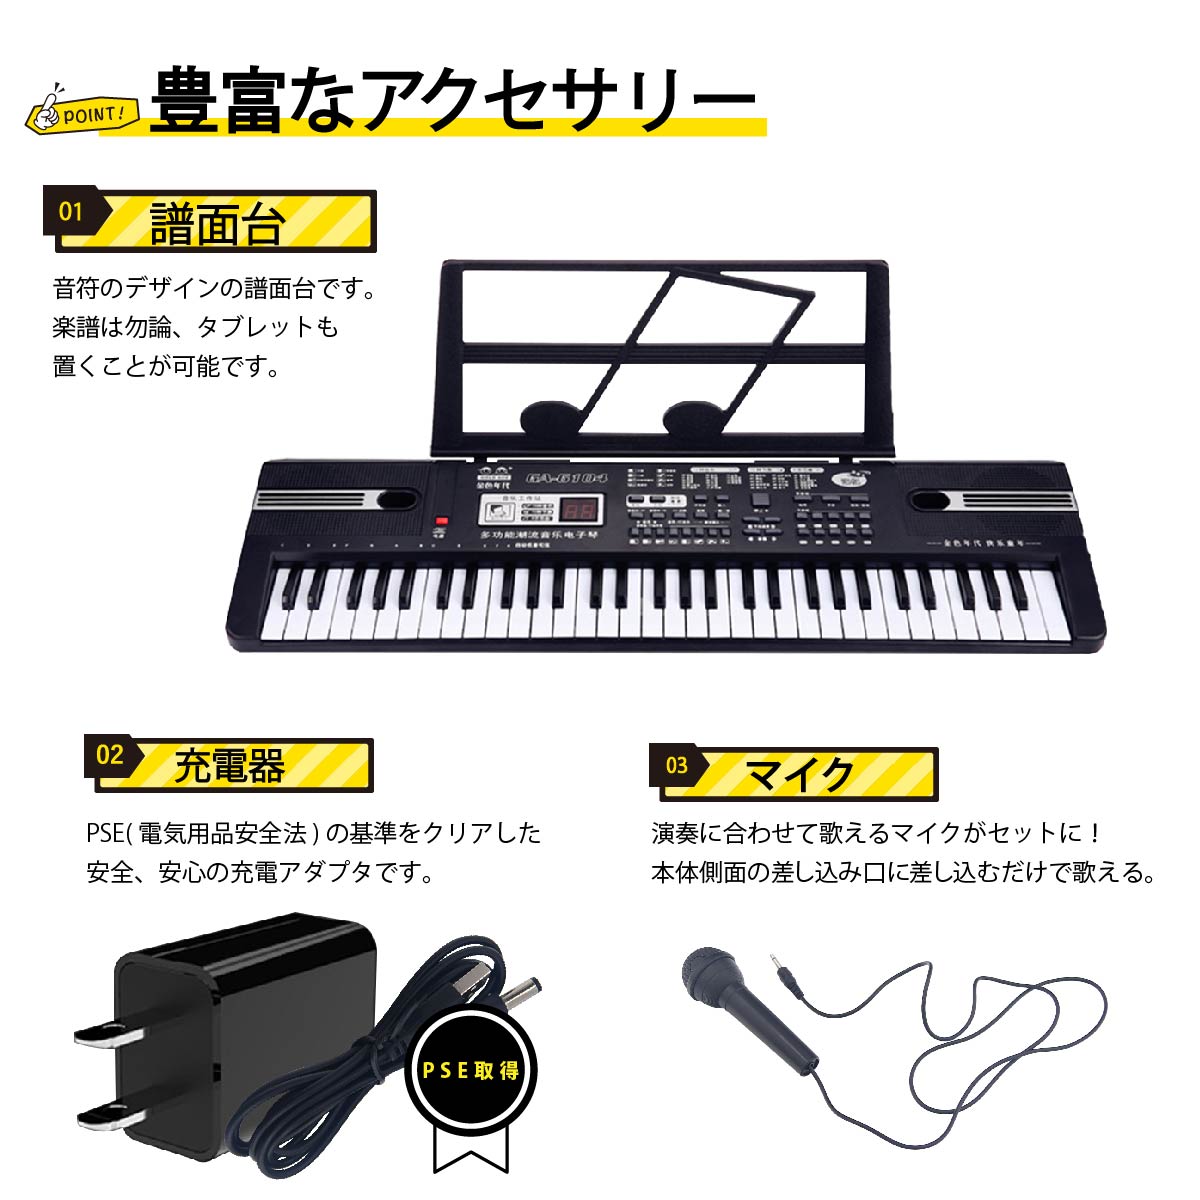 キーボード 電子ピアノ ミニ コンパクト ポータブル 軽量 61鍵盤 